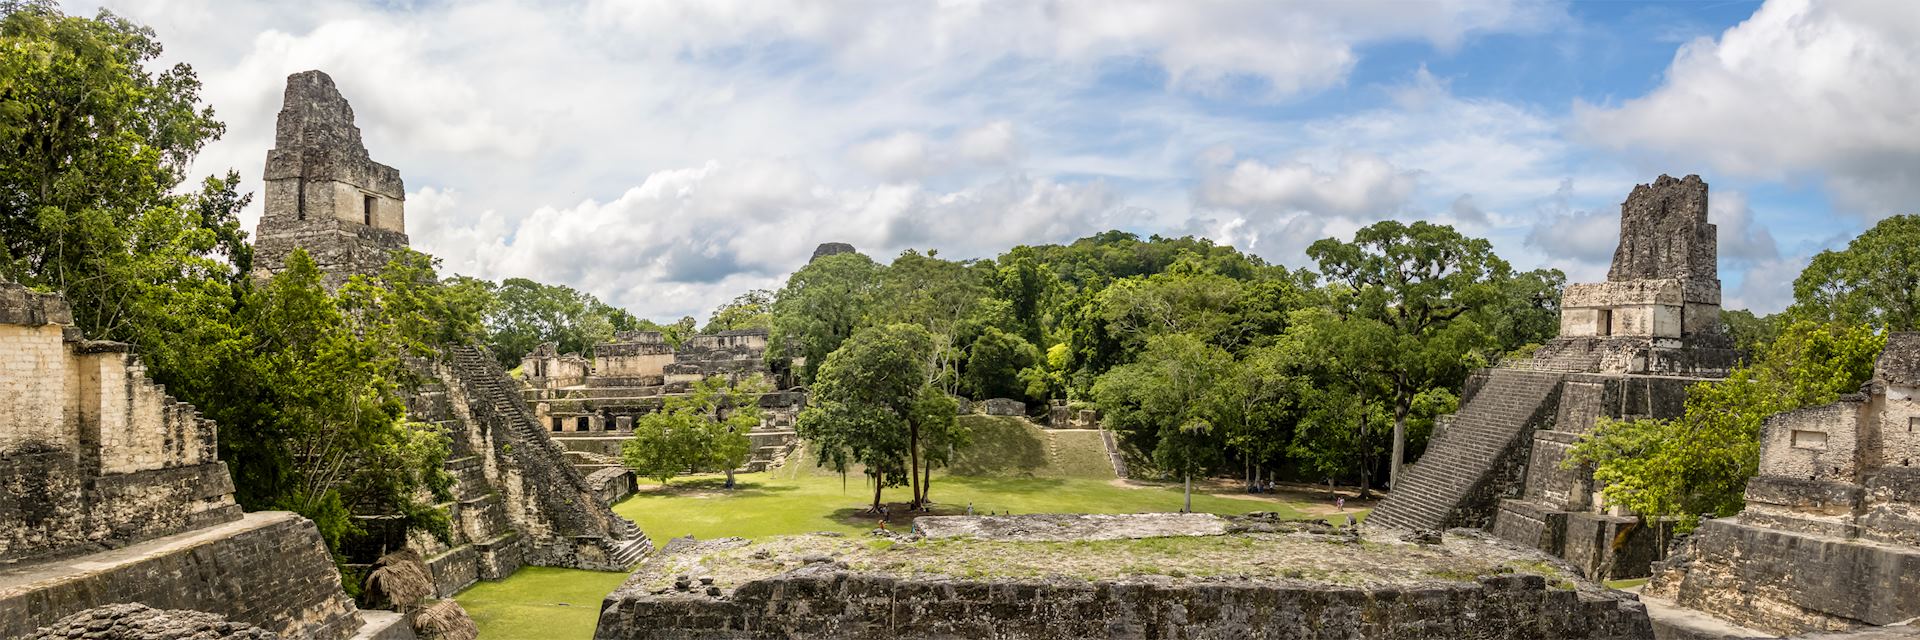 Panorama of Tikal